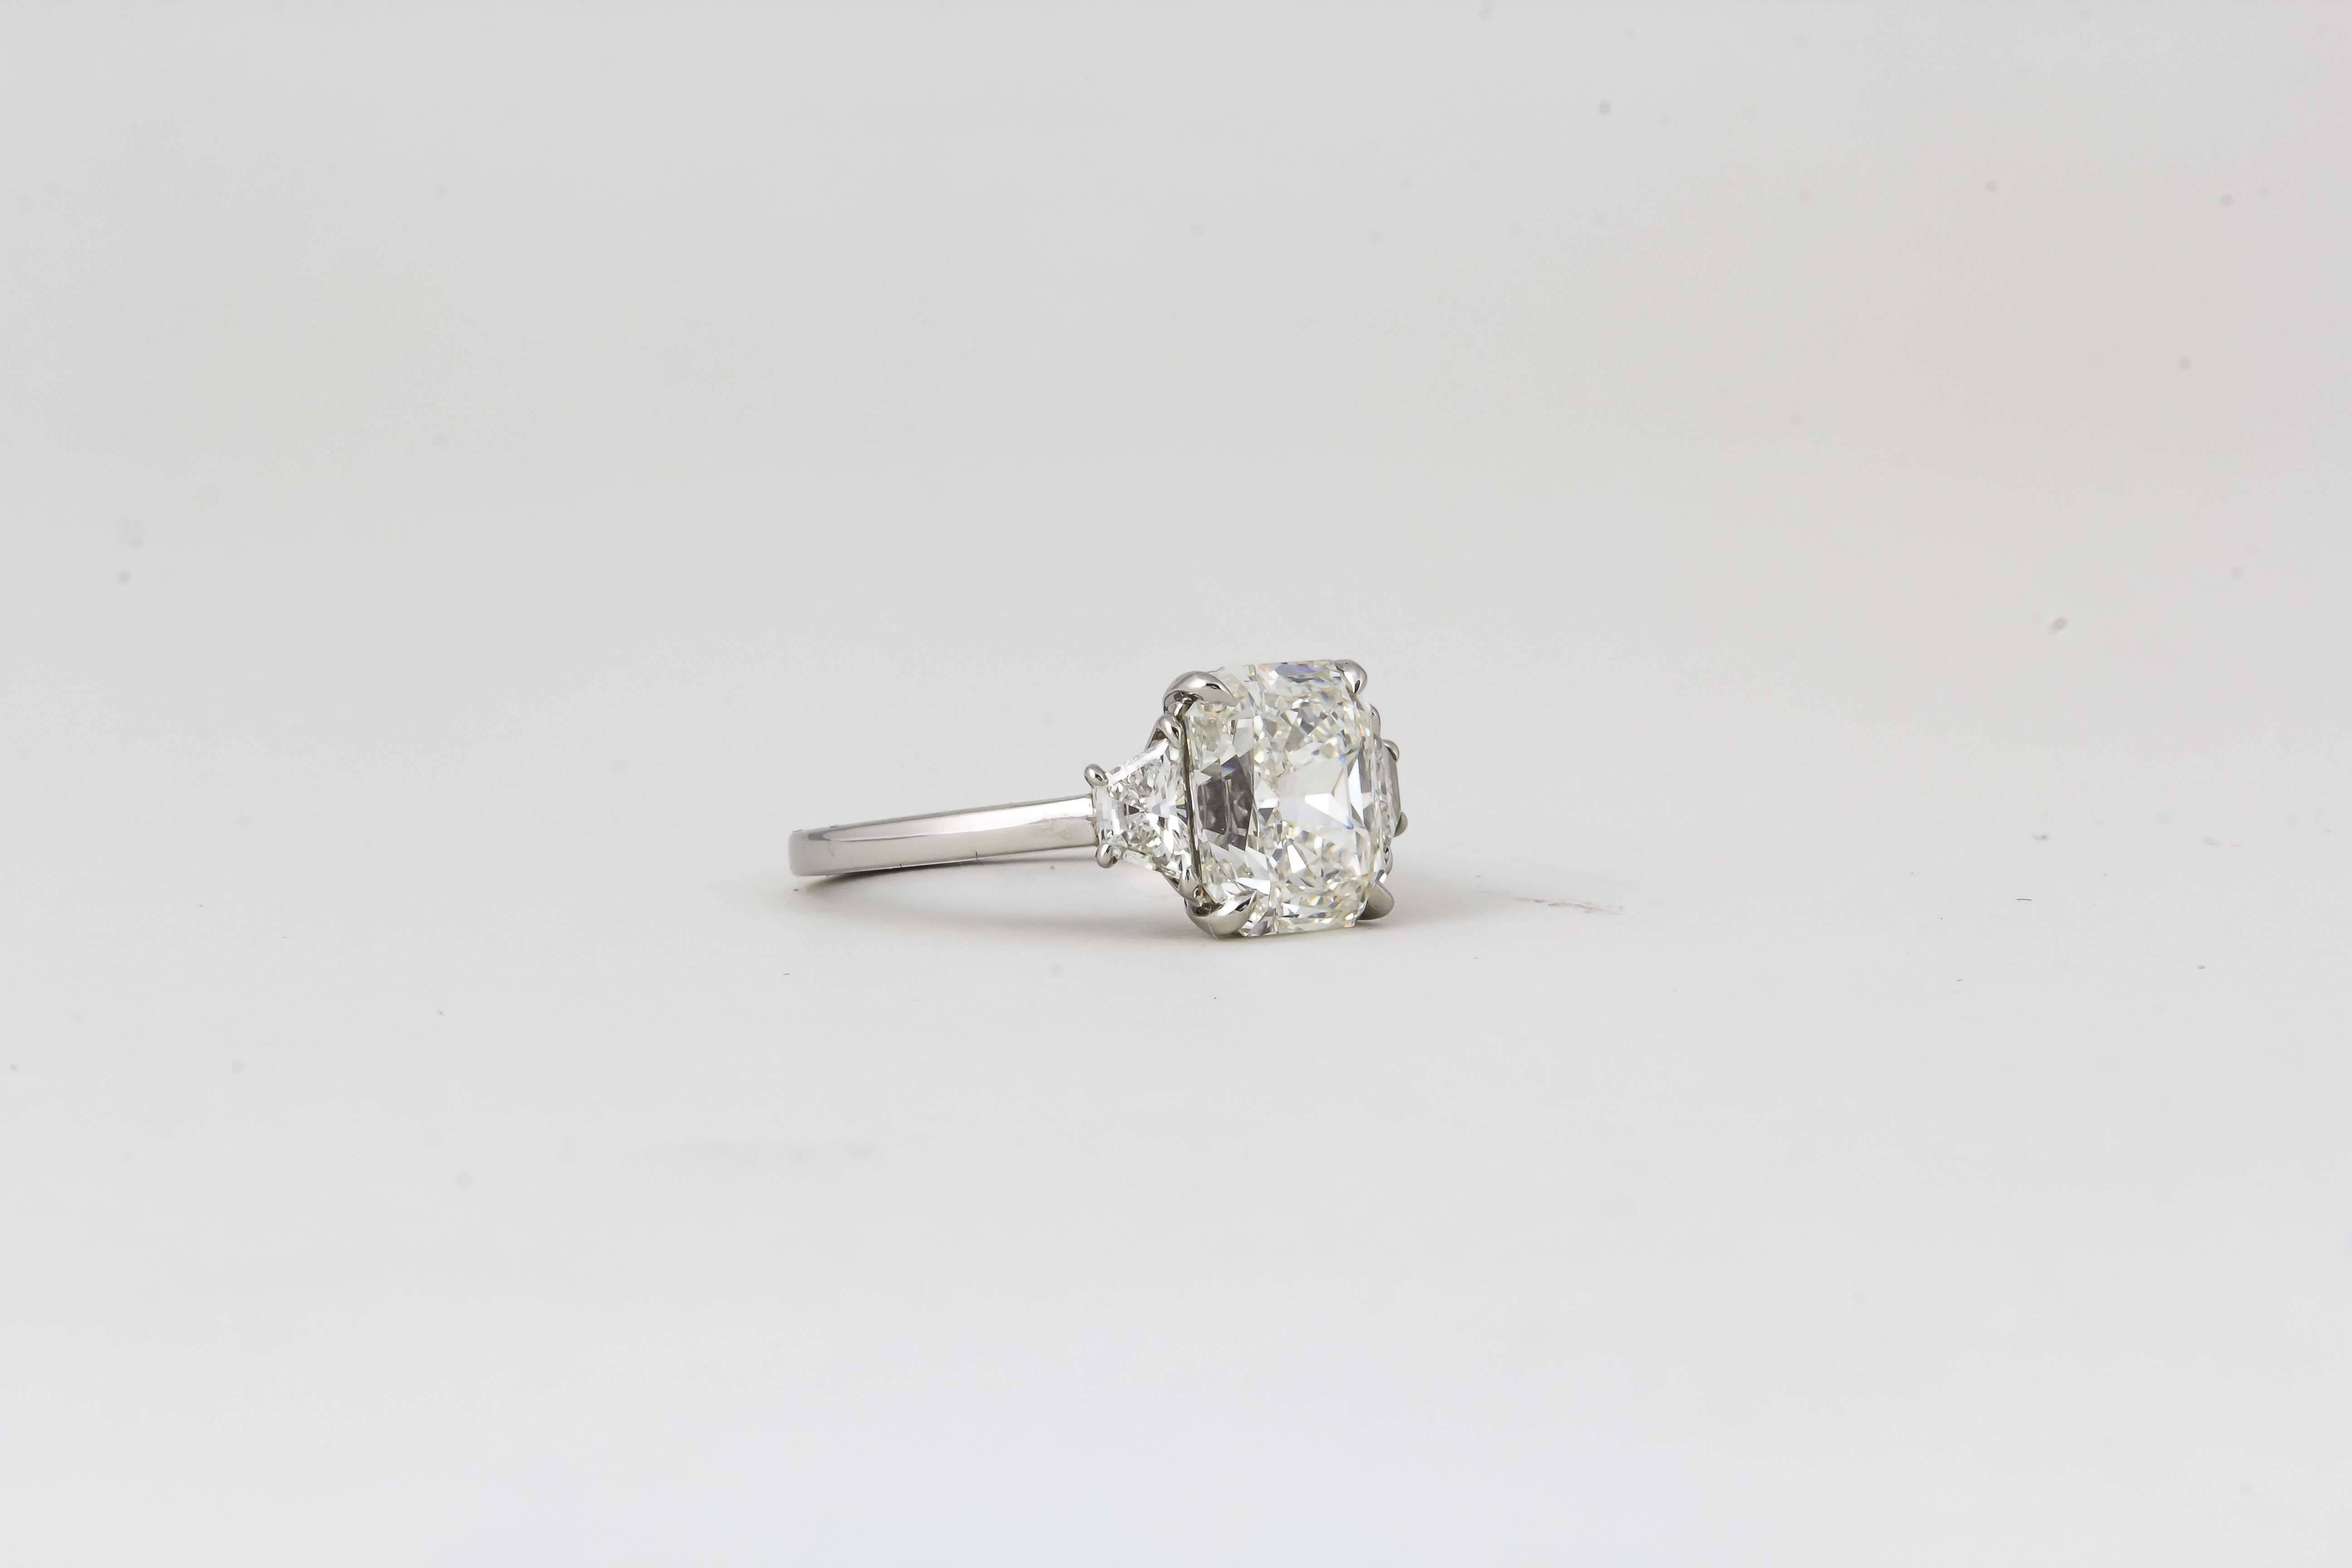 

Ein wunderschöner Diamant mit Strahlenschliff in einer zeitlosen, maßgefertigten Fassung. 

3,18 Karat zentraler H VS1-Diamant im Radiant-Schliff, besetzt mit passenden Diamanten im Trapezschliff mit einem Gewicht von 0,37 Karat. Eingefasst in